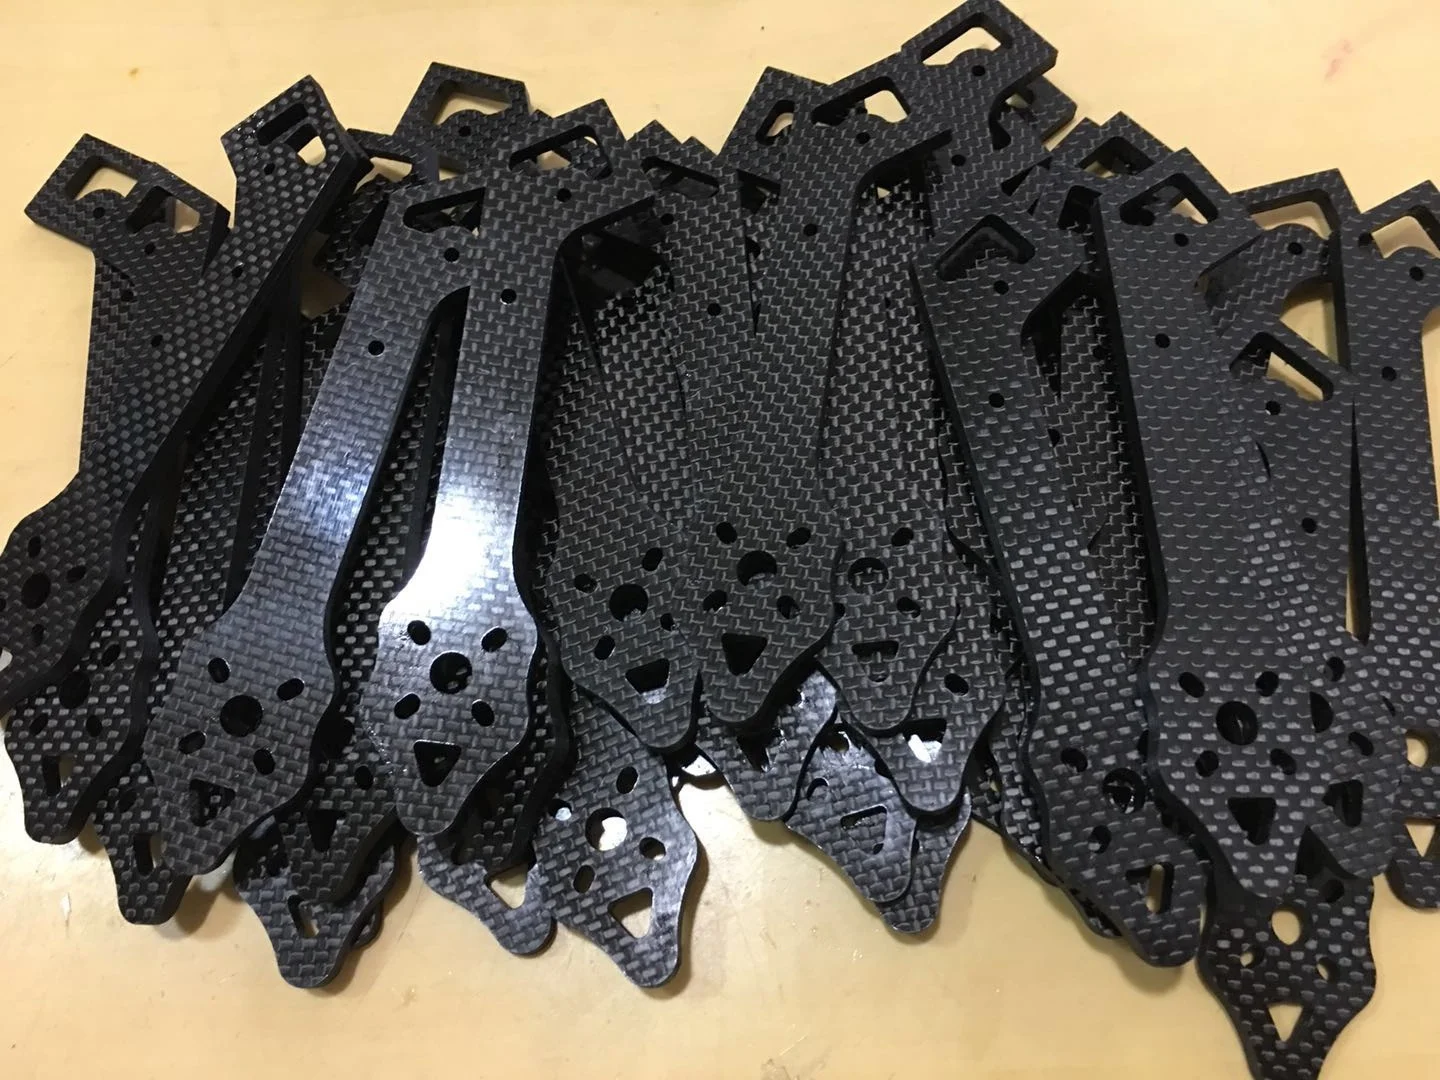 
RJX custom cnc carbon fiber parts carbon fiber products 